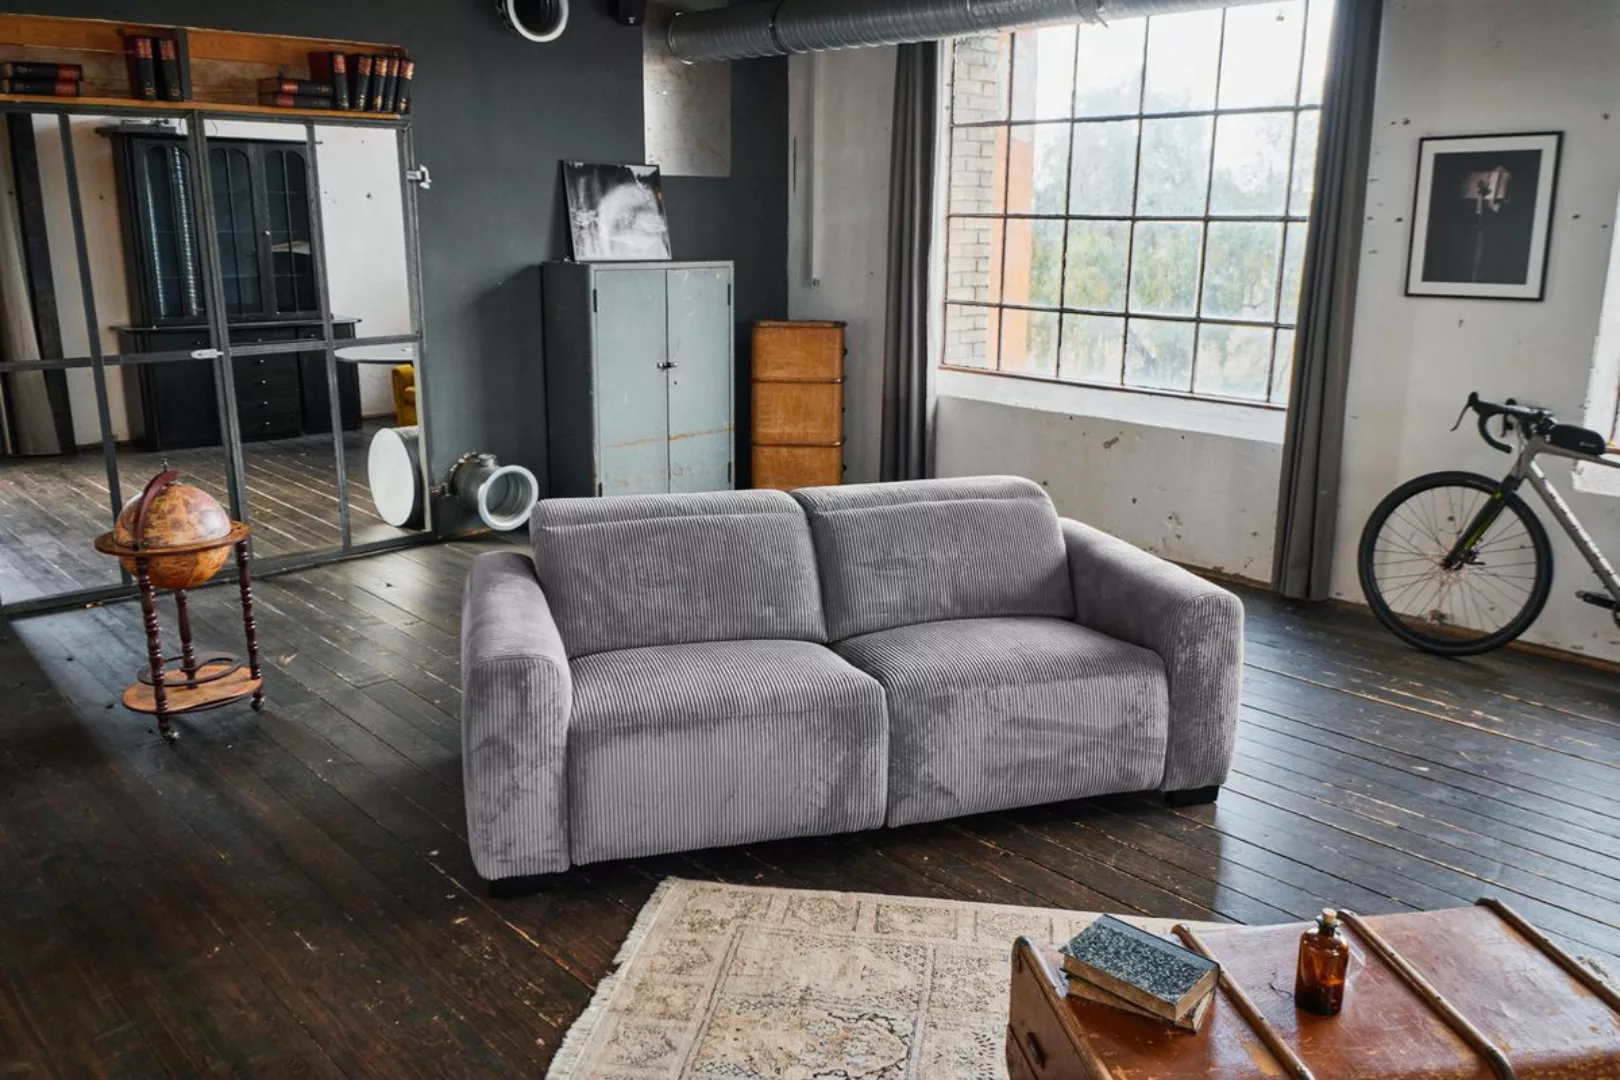 KAWOLA 3-Sitzer FINN, Sofa mit Relaxfunktion, versch. Bezüge und Farben günstig online kaufen